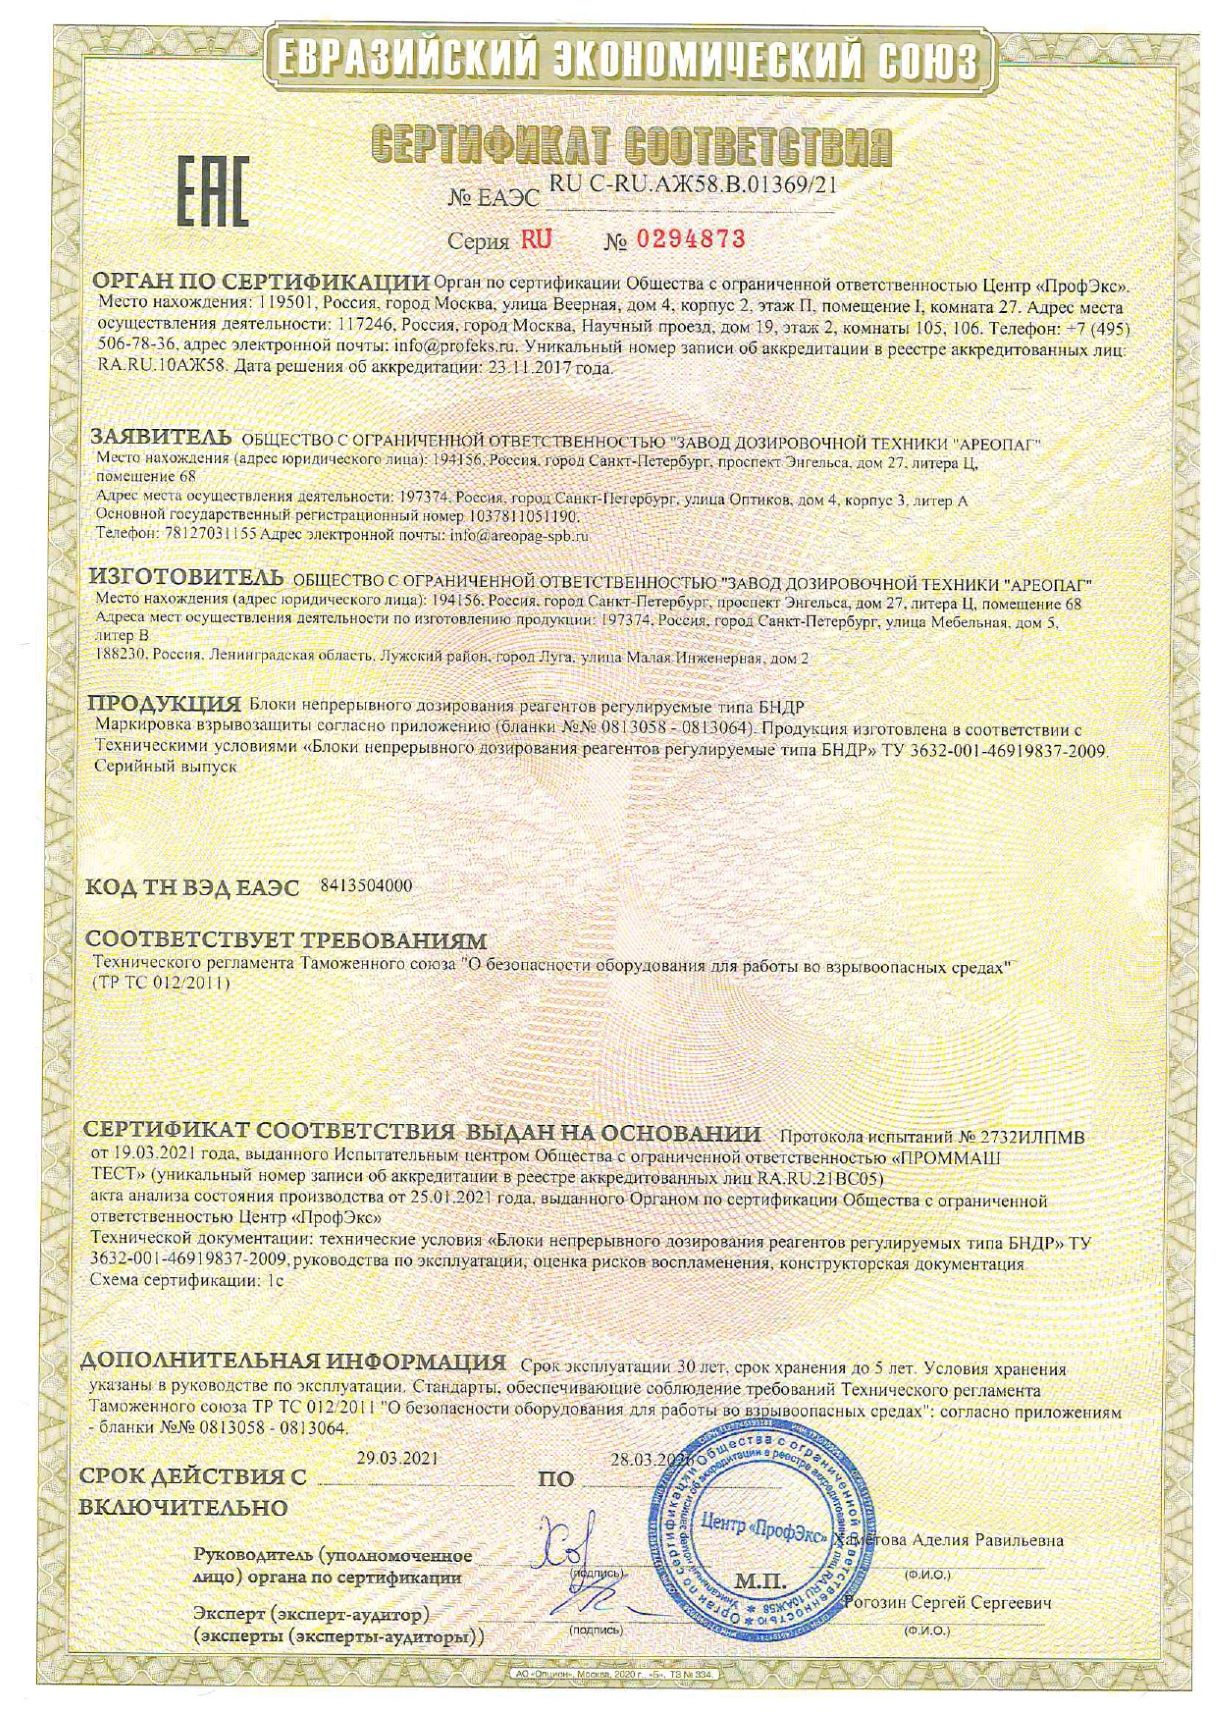 Сертификат соответствия № ЕАЭС RU C-RU.AЖ58.B.01369/21 Серия RU № 0294873 Блоки непрерывного дозирования реагентов регулируемые тип БНДР с Ex-маркировкой.